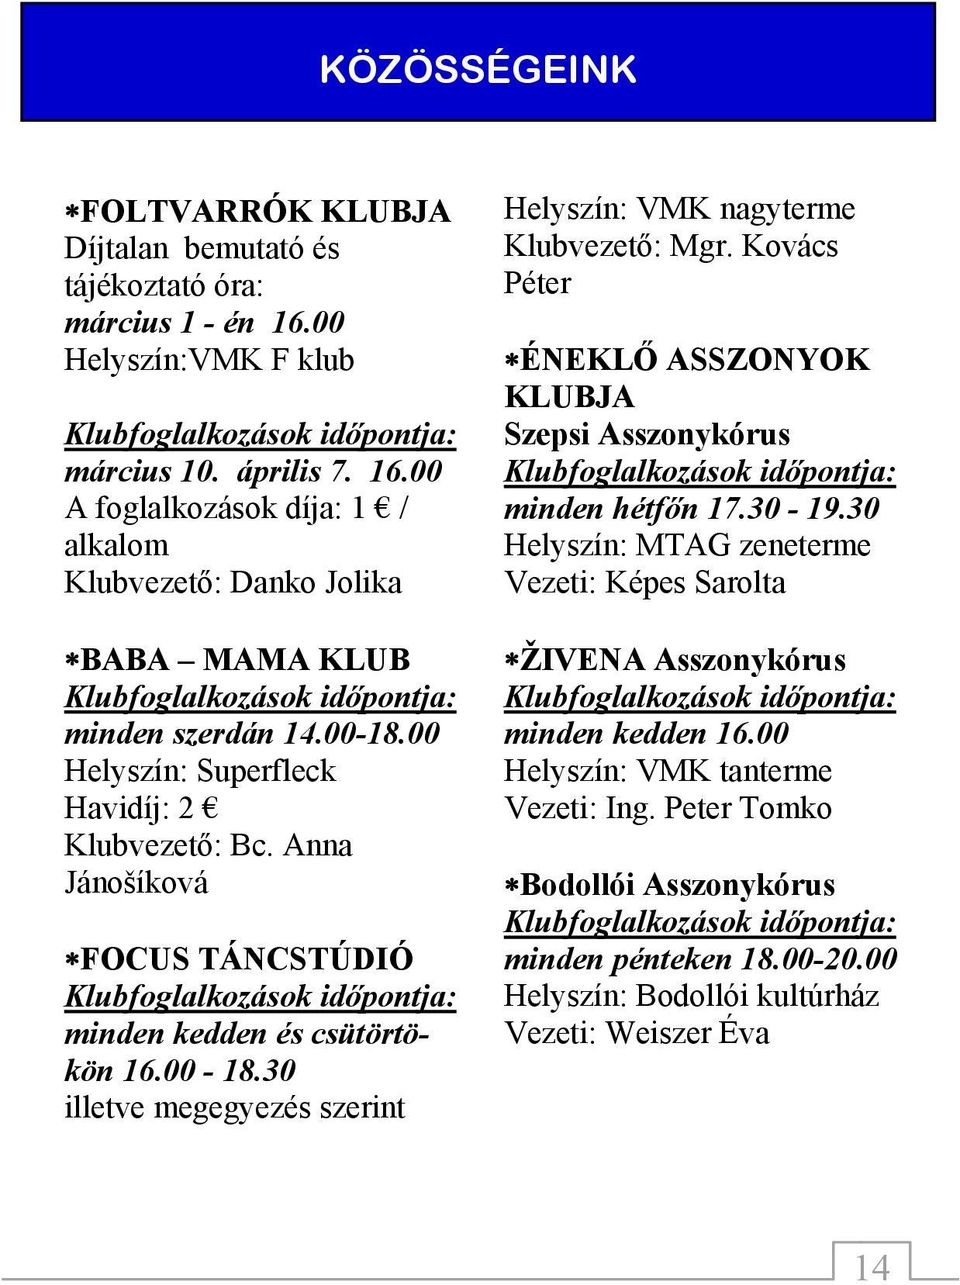 00 Helyszín: Superfleck Havidíj: 2 Klubvezető: Bc. Anna Jánošíková FOCUS TÁNCSTÚDIÓ minden kedden és csütörtökön 16.00-18.30 illetve megegyezés szerint Klubvezető: Mgr.